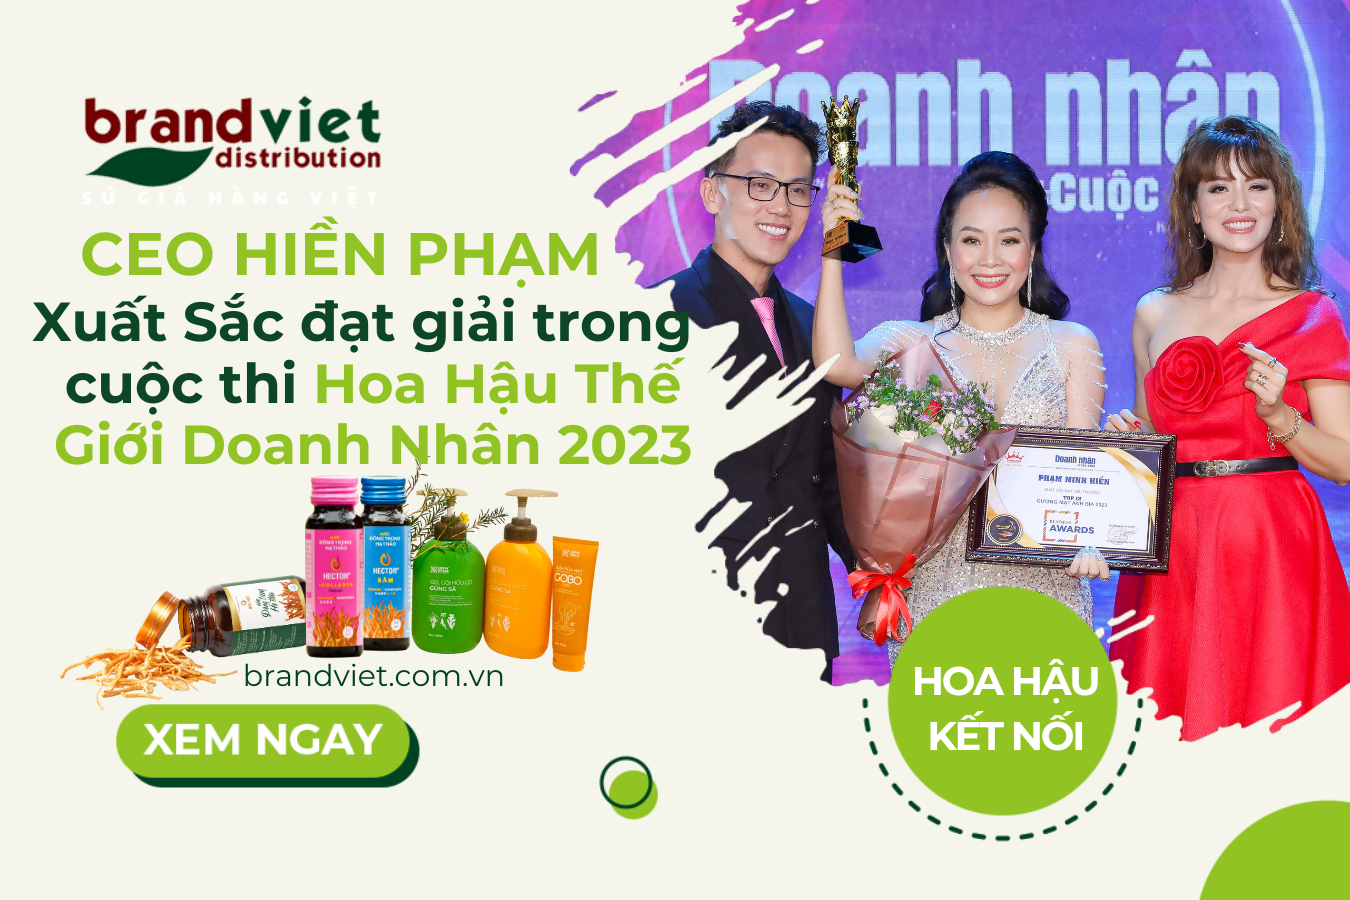 CEO Hiền Phạm Xuất Sắc Đạt Giải trong Cuộc Thi HOA HẬU THẾ GIỚI DOANH NHÂN 2023